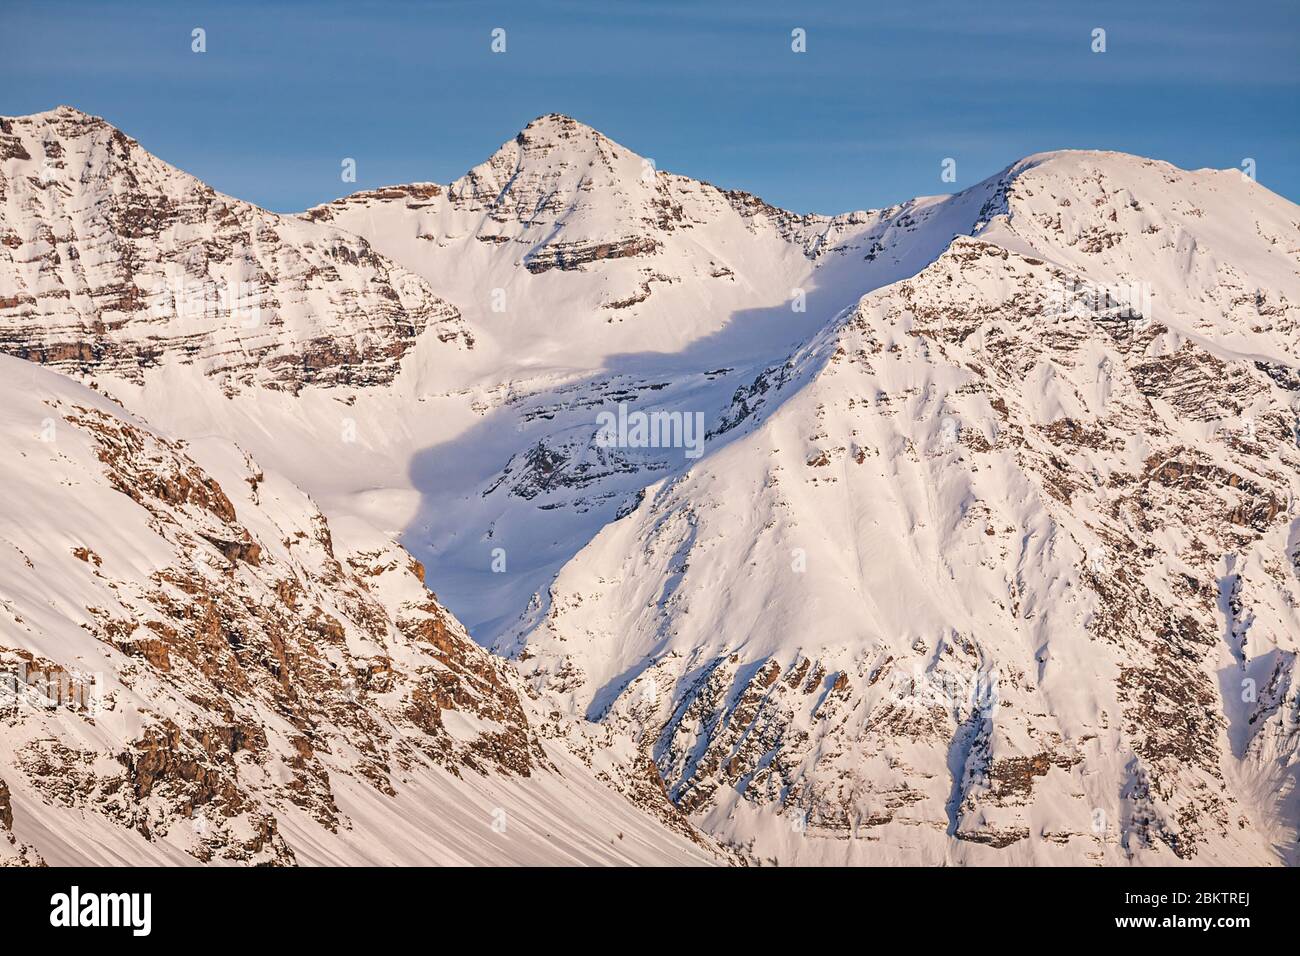 Pics de montagne autour de la station de ski d'Orcières près de Gap, France Banque D'Images